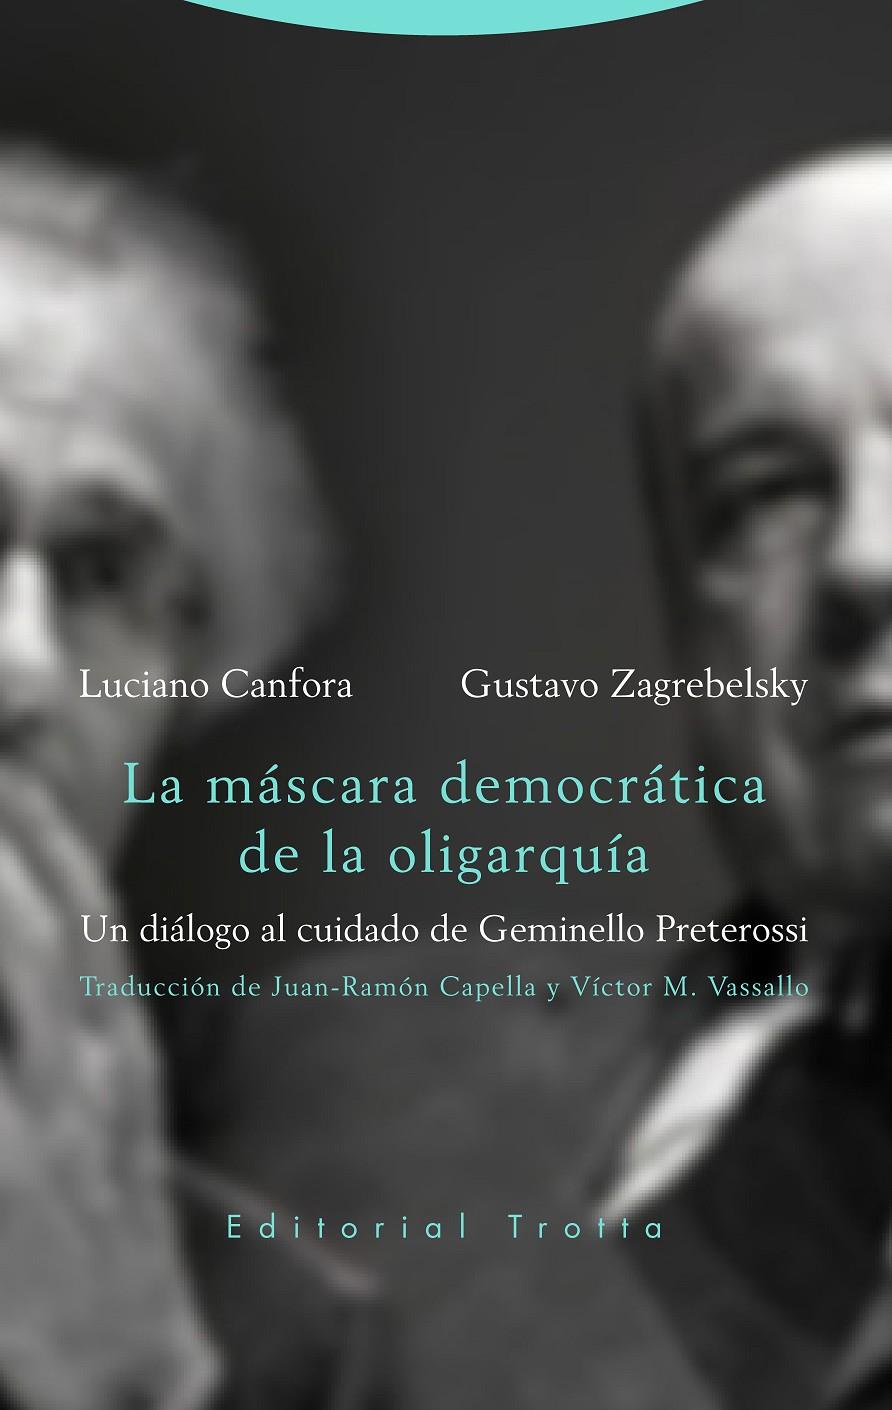 La máscara democrática de la oligarquía | Canfora, Luciano/Zagreblesky, Gustavo | Cooperativa autogestionària